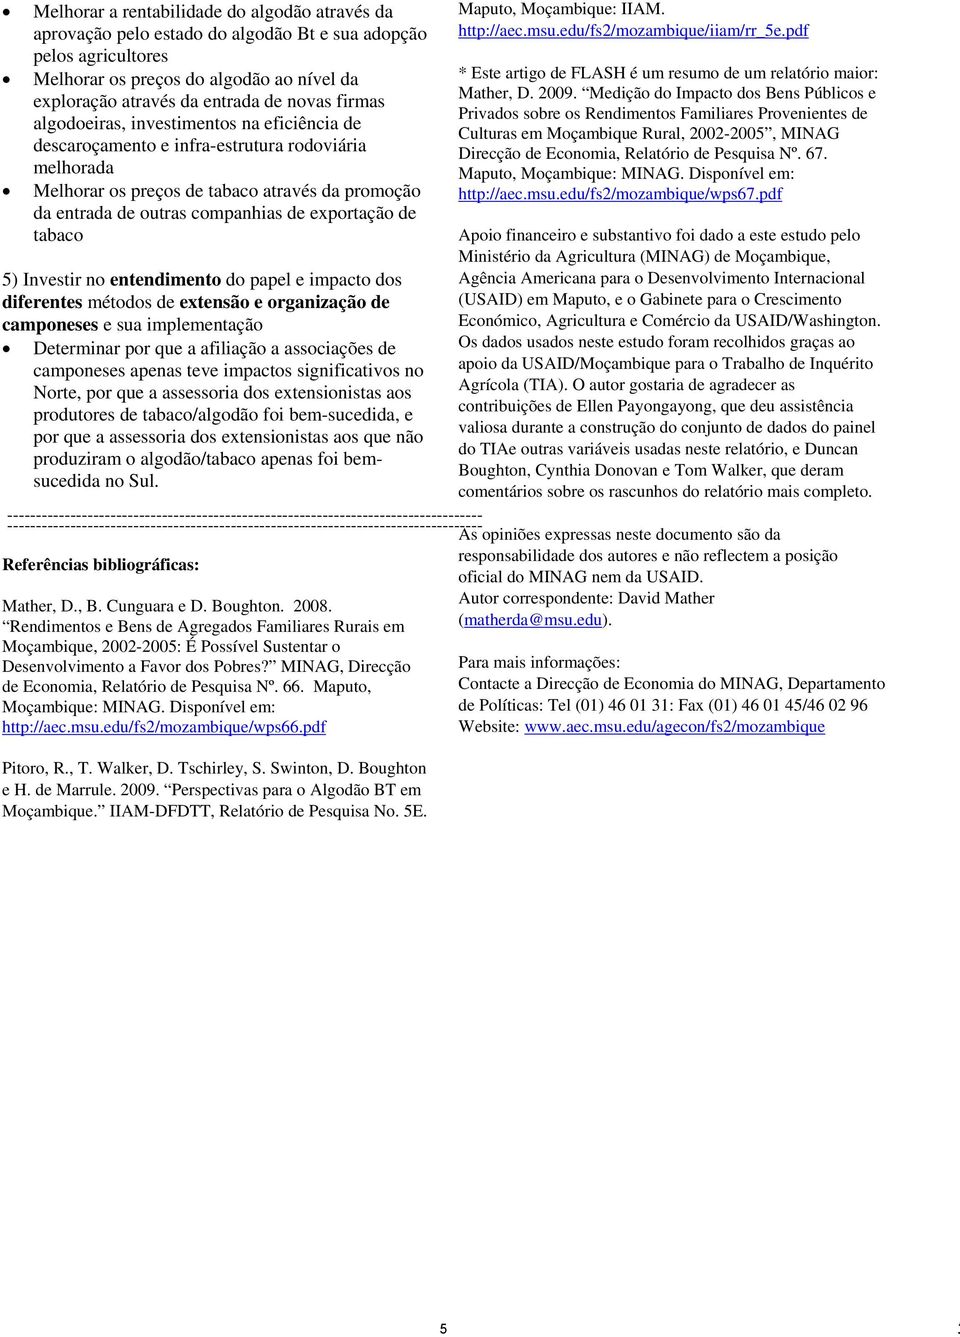 de tabaco Referências bibliográficas: Mather, D., B. Cunguara e D. Boughton. 2008.